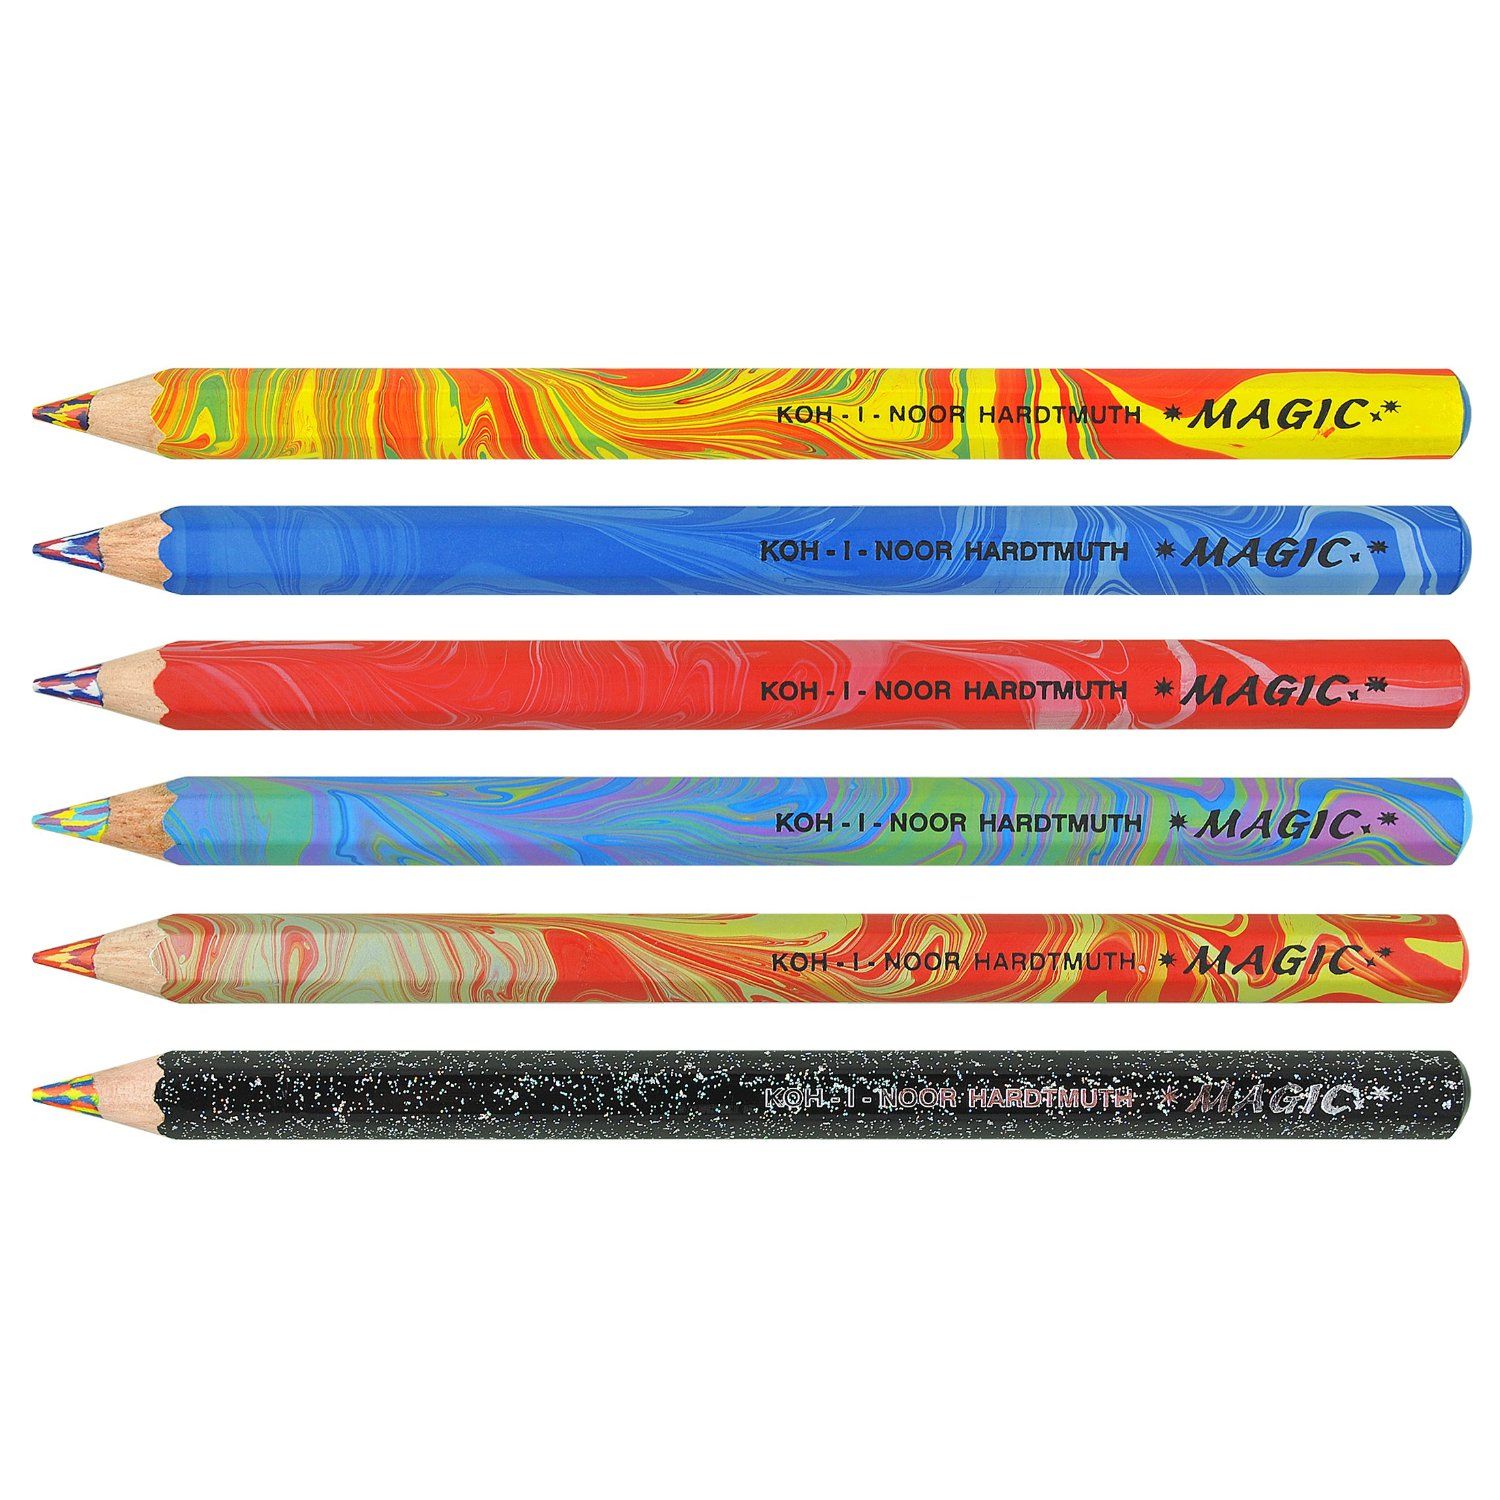 Amazon.com: Koh-i-noor 6 Magic Pencils with Special Multicolored ...